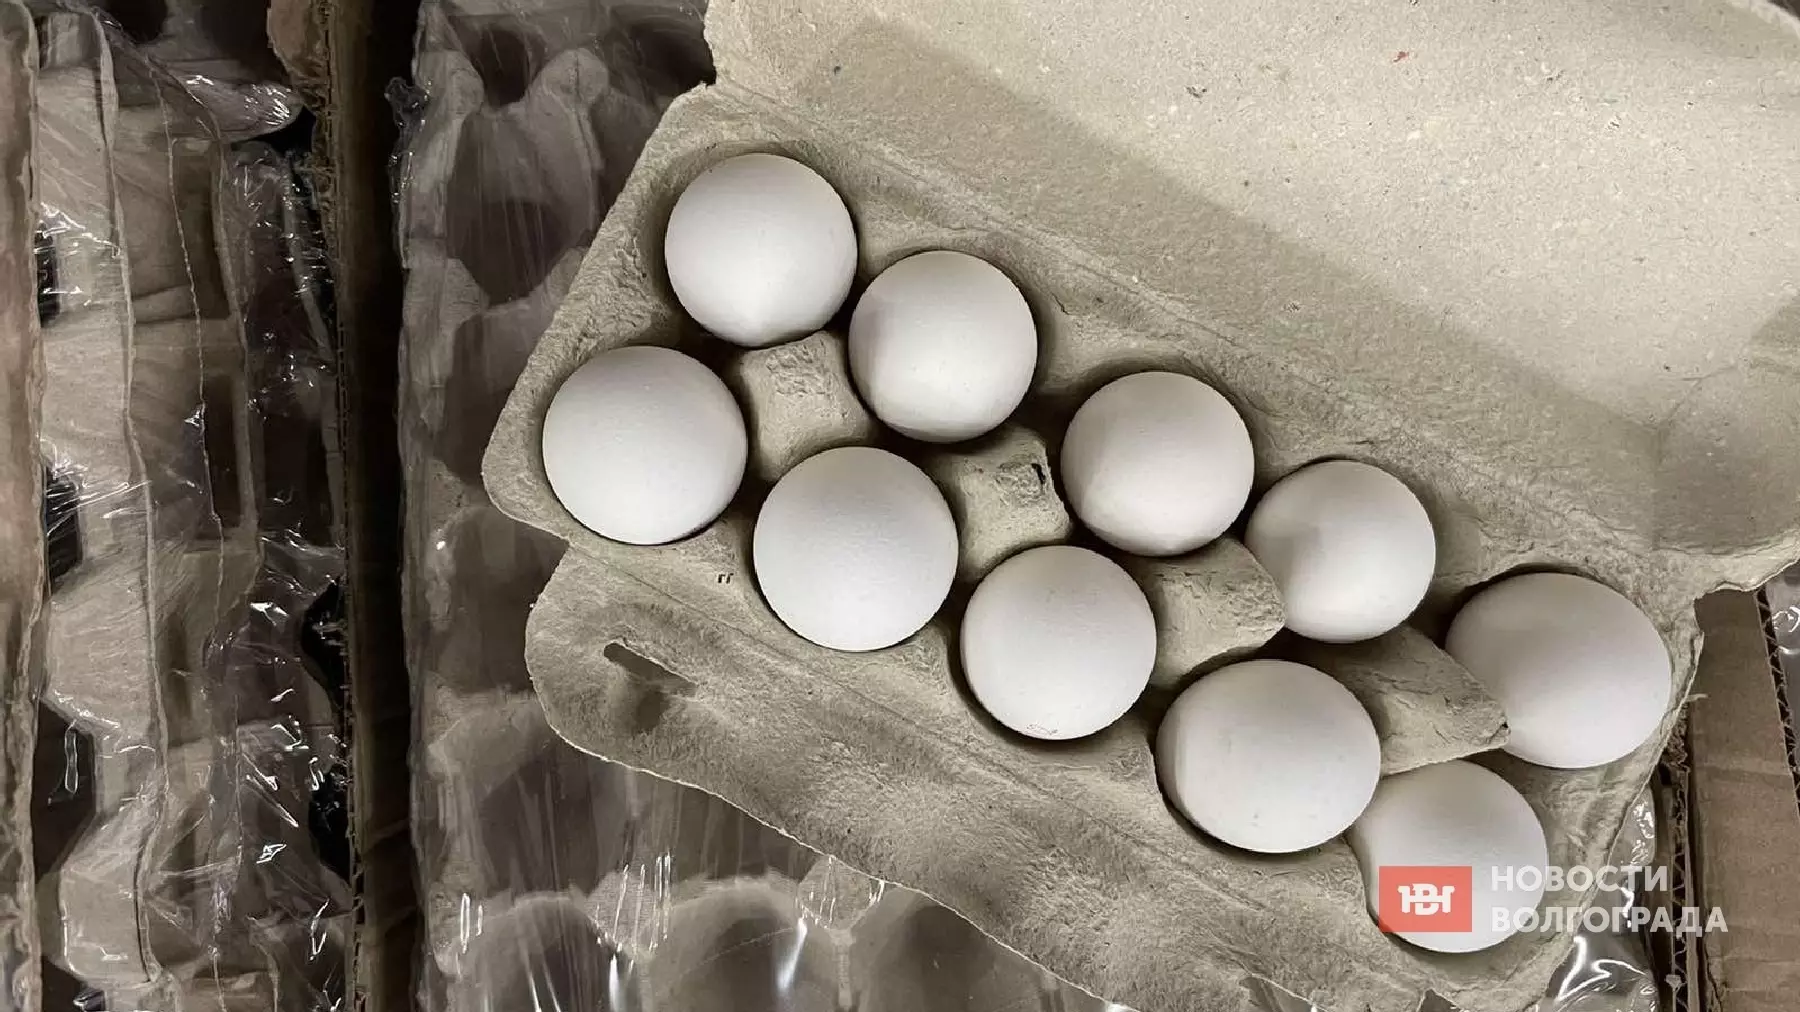 Насколько подорожали яйца в магазинах Волгограда